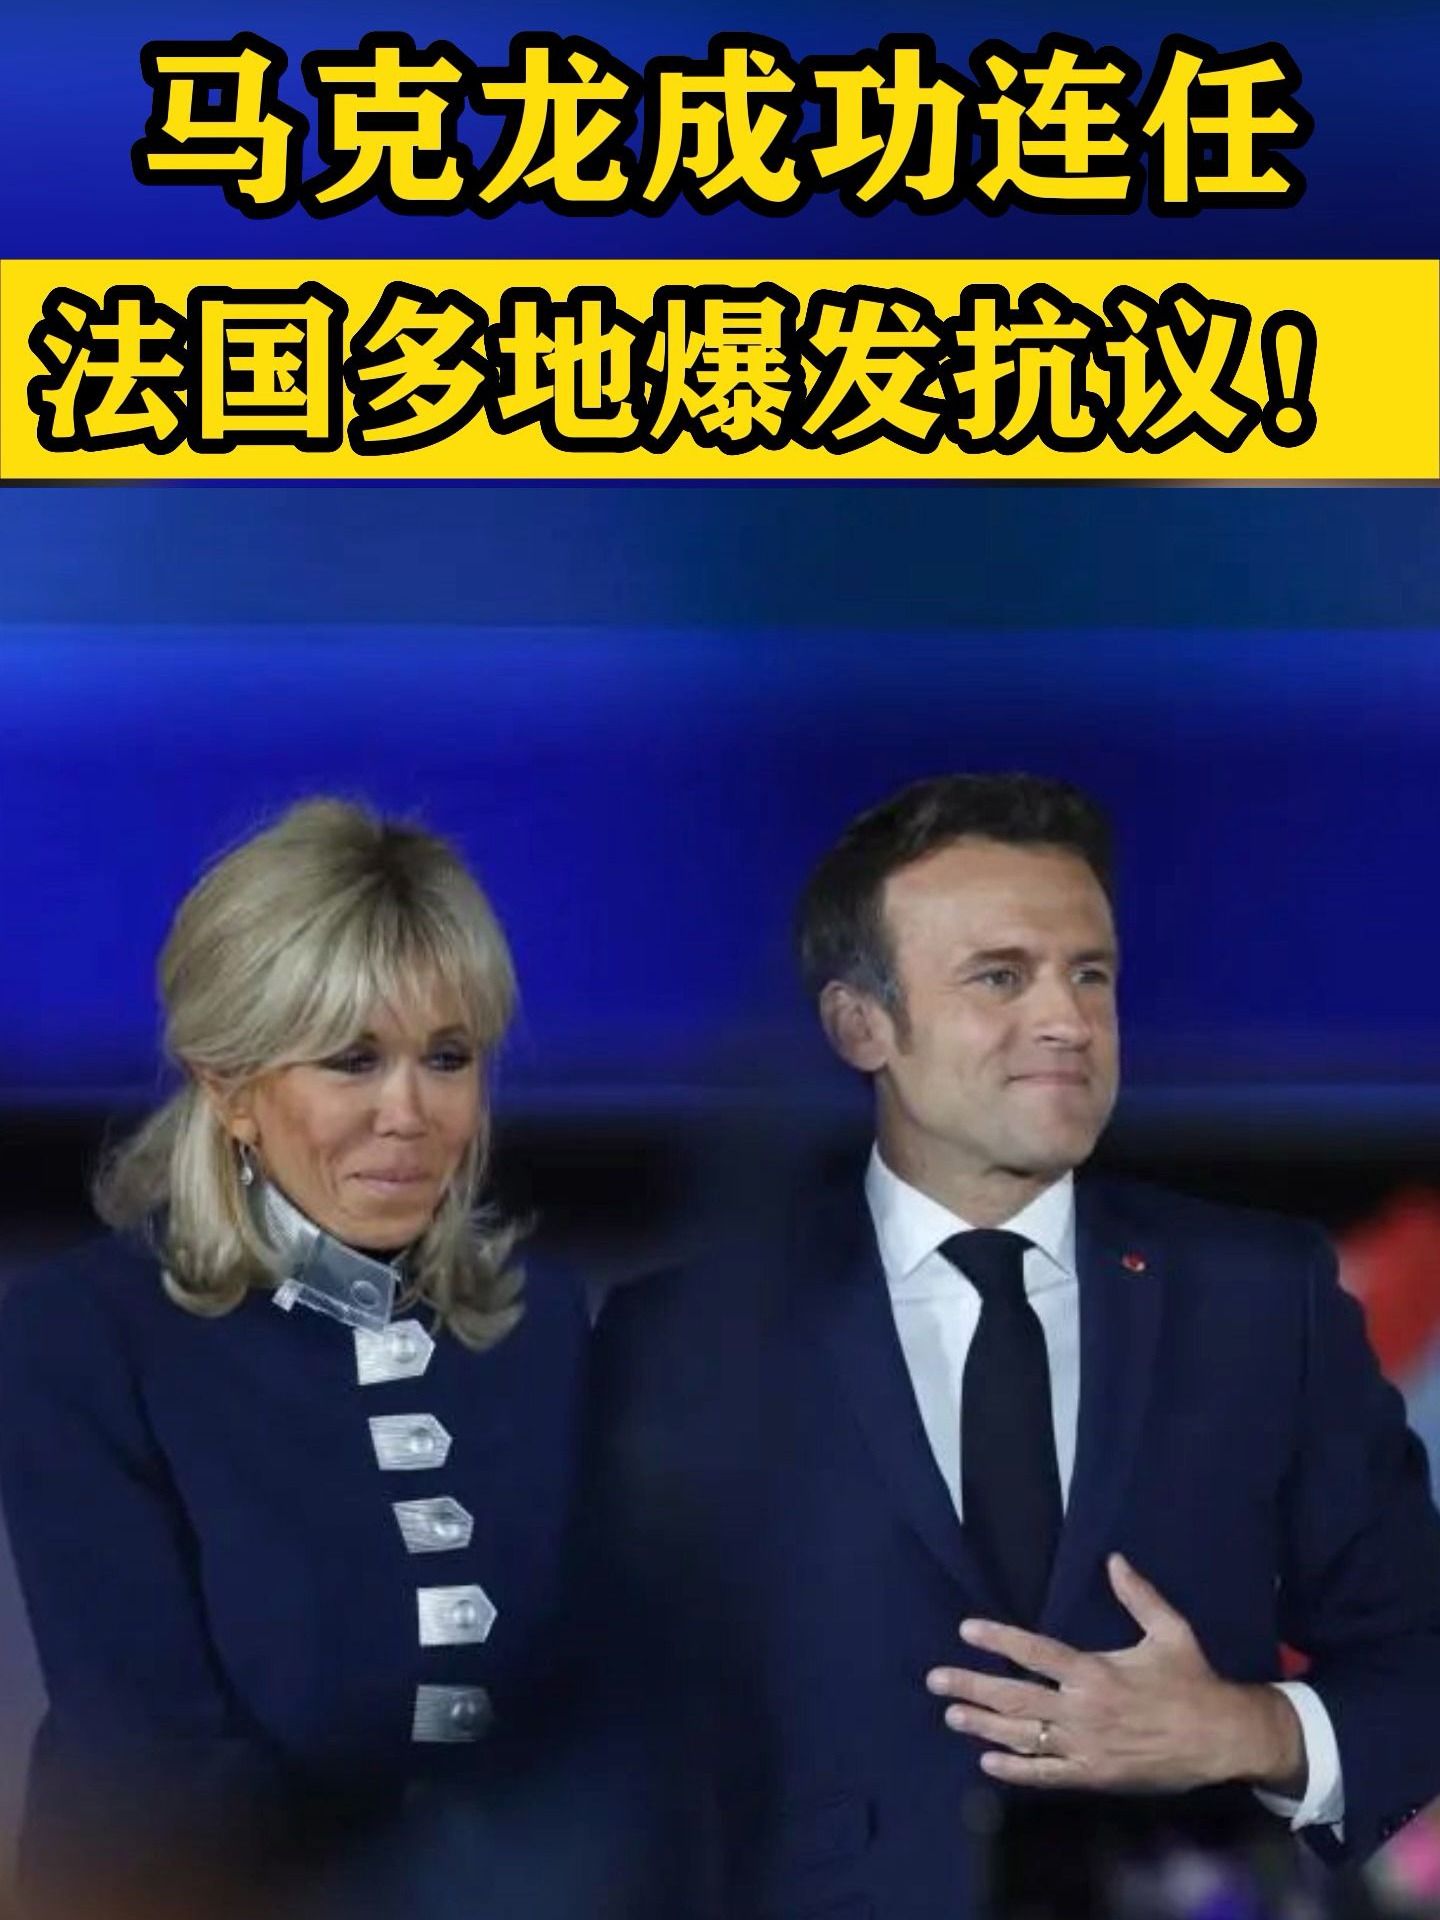 Brigitte Macron arrive seule à la passation de pouvoir - Madame Figaro